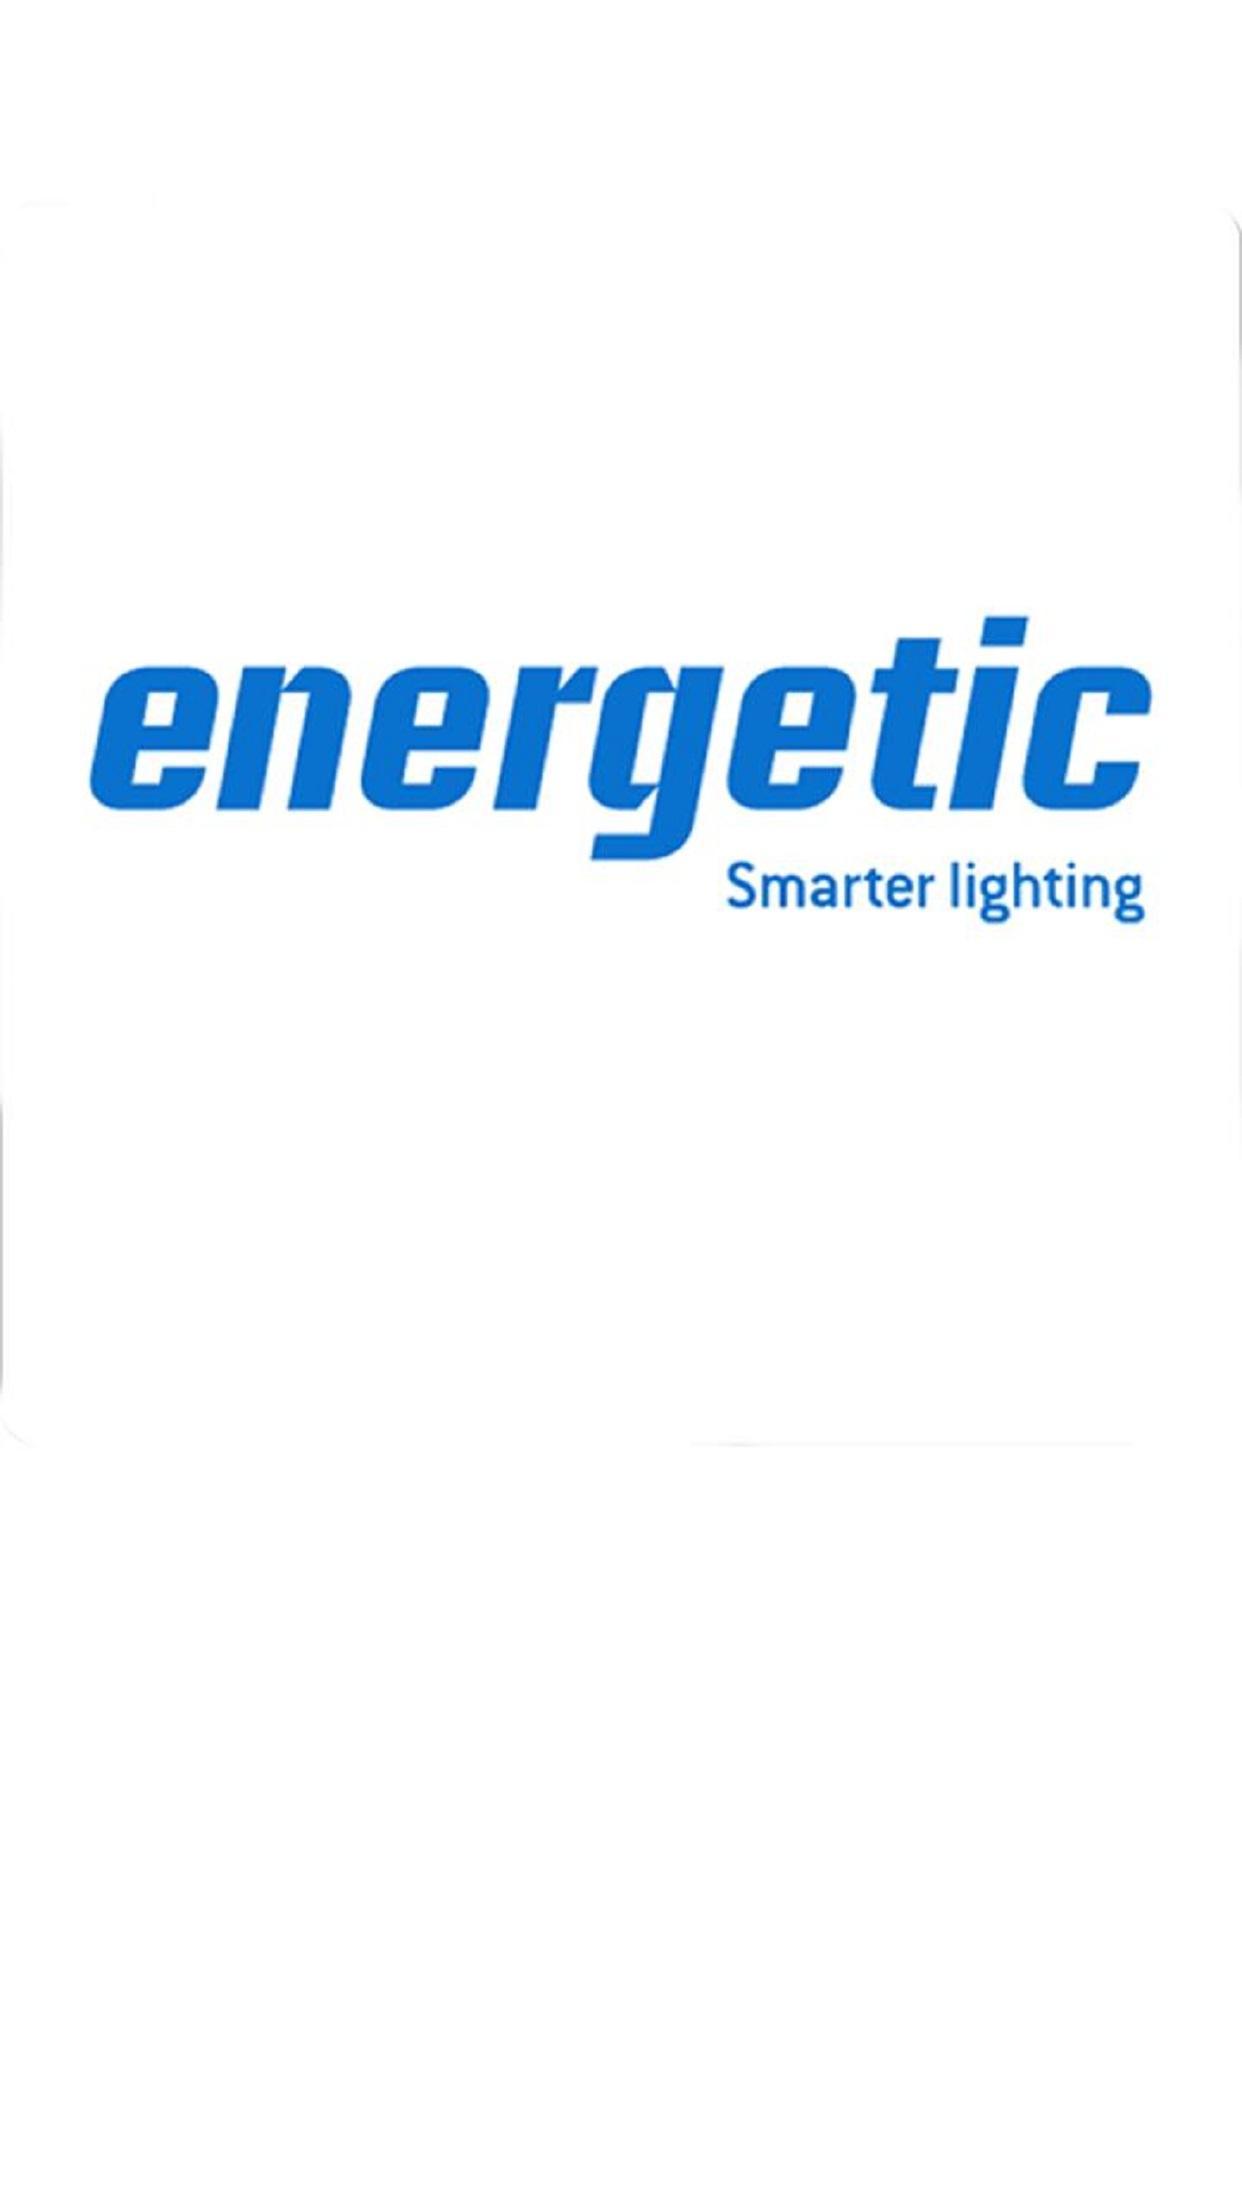 Energetic lighting